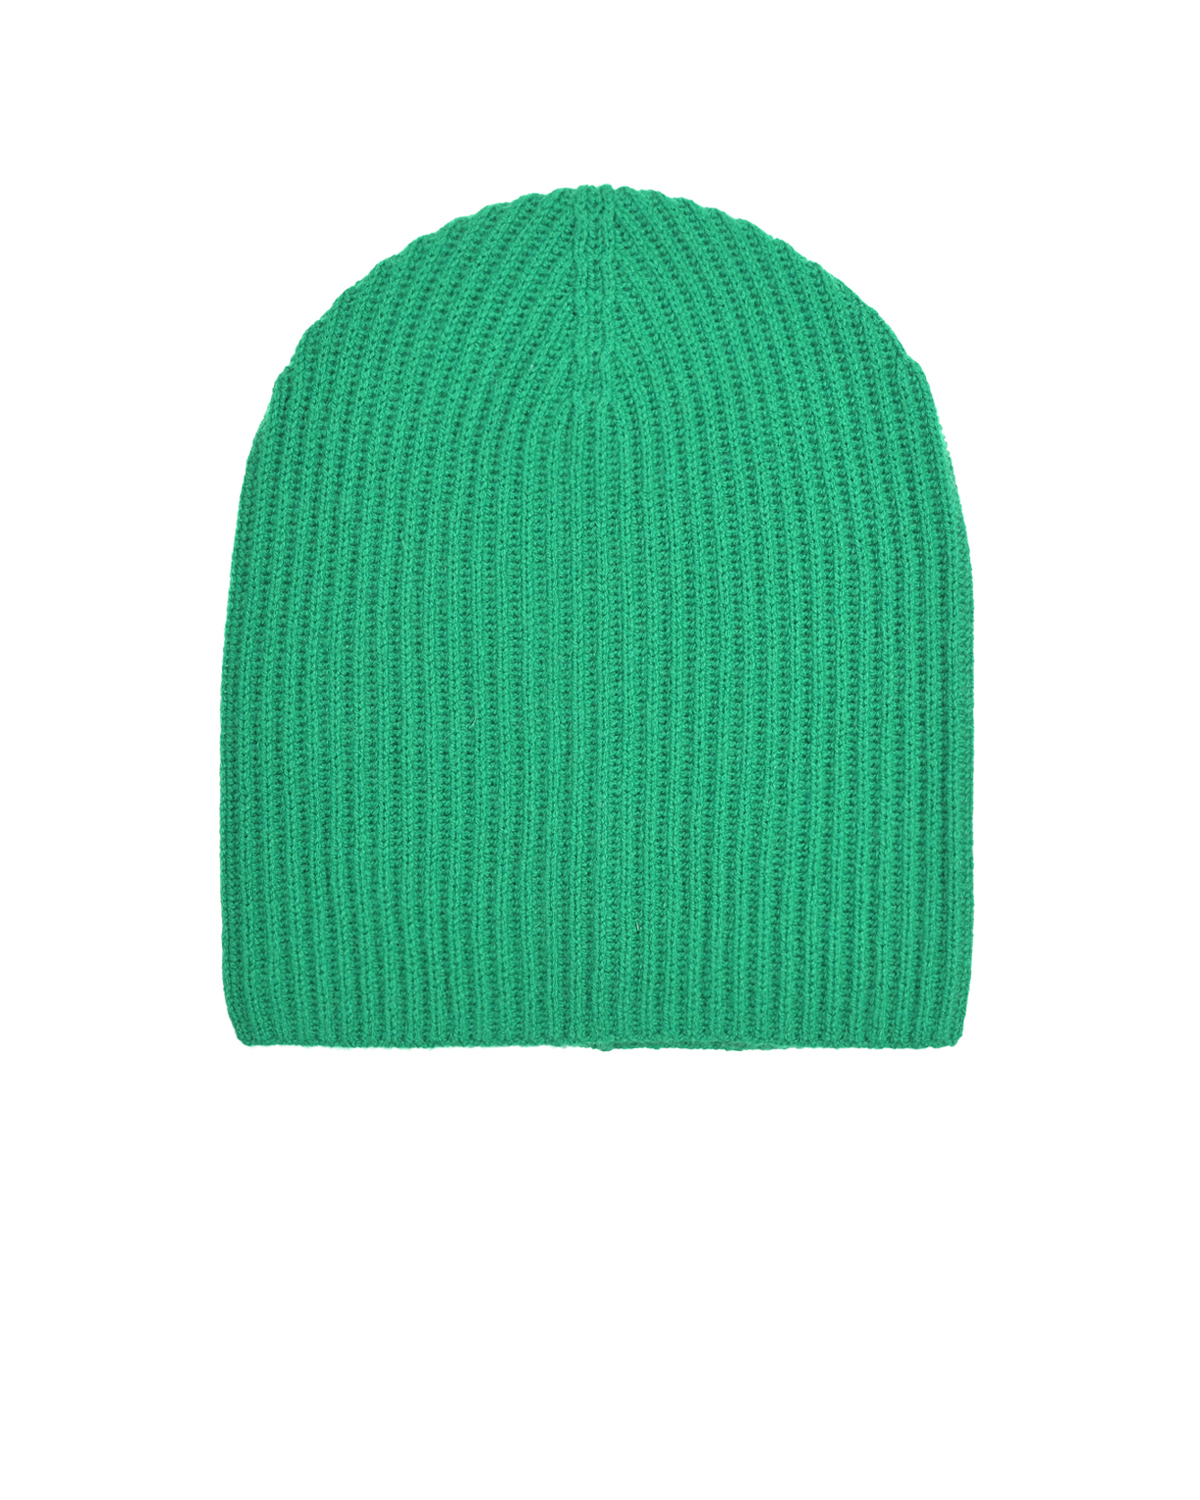 Зеленая шапка бини из кашемира Allude, размер unica, цвет зеленый